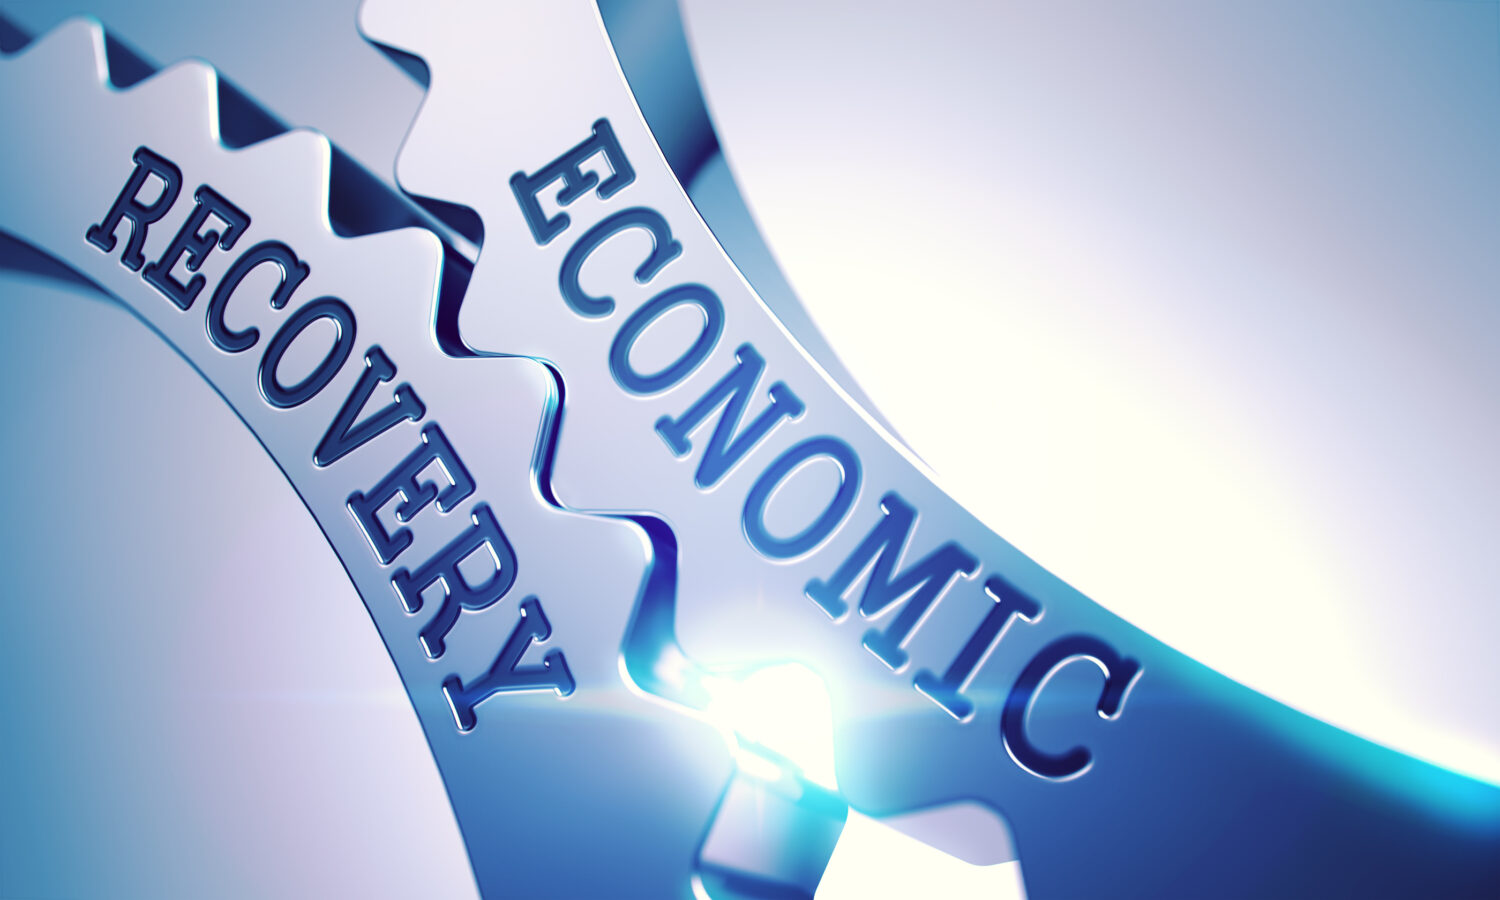 economic-recovery